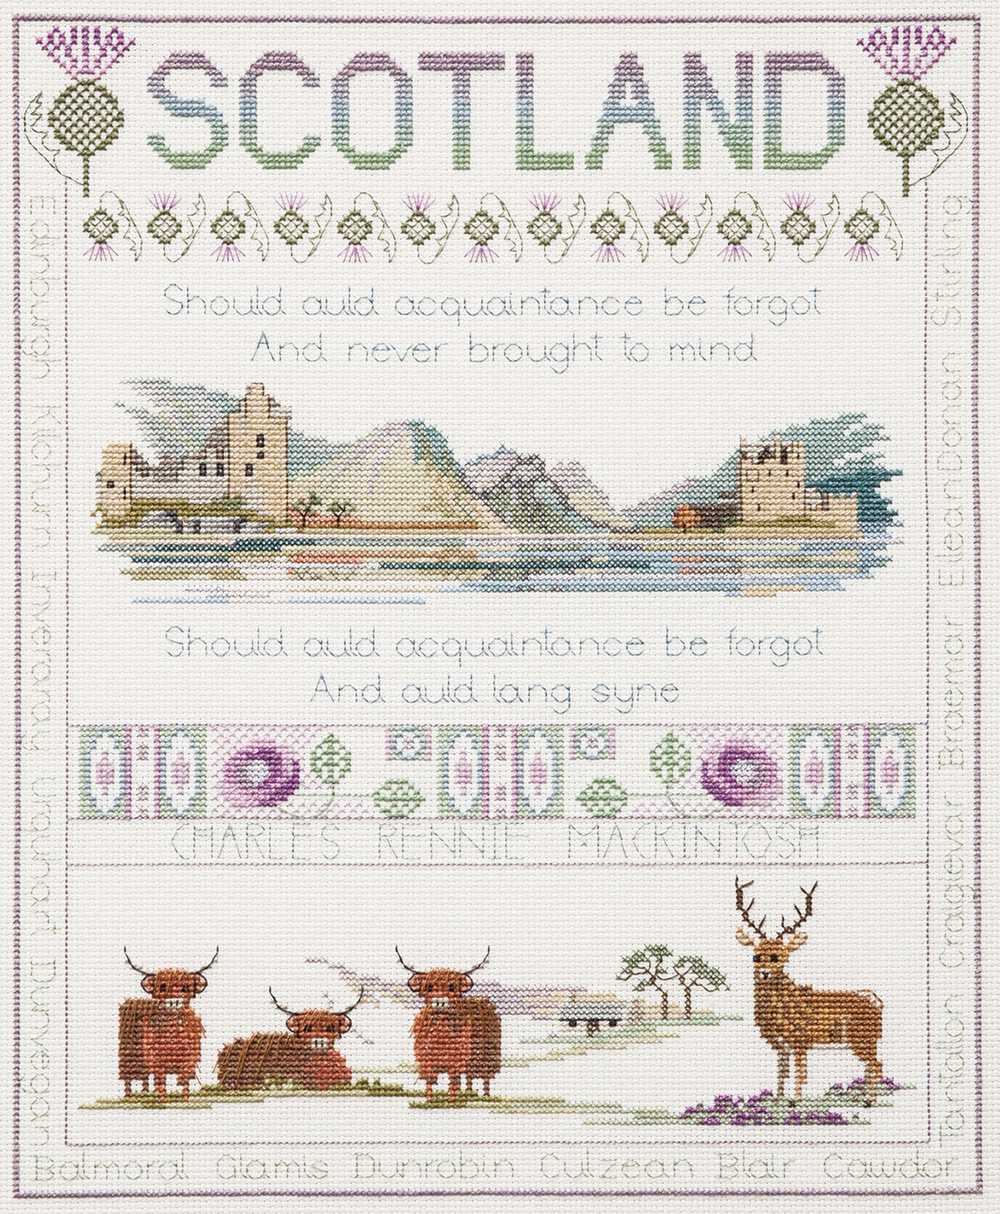 Scotland Sampler Cross Stitch Kit From Derwentwater Designs